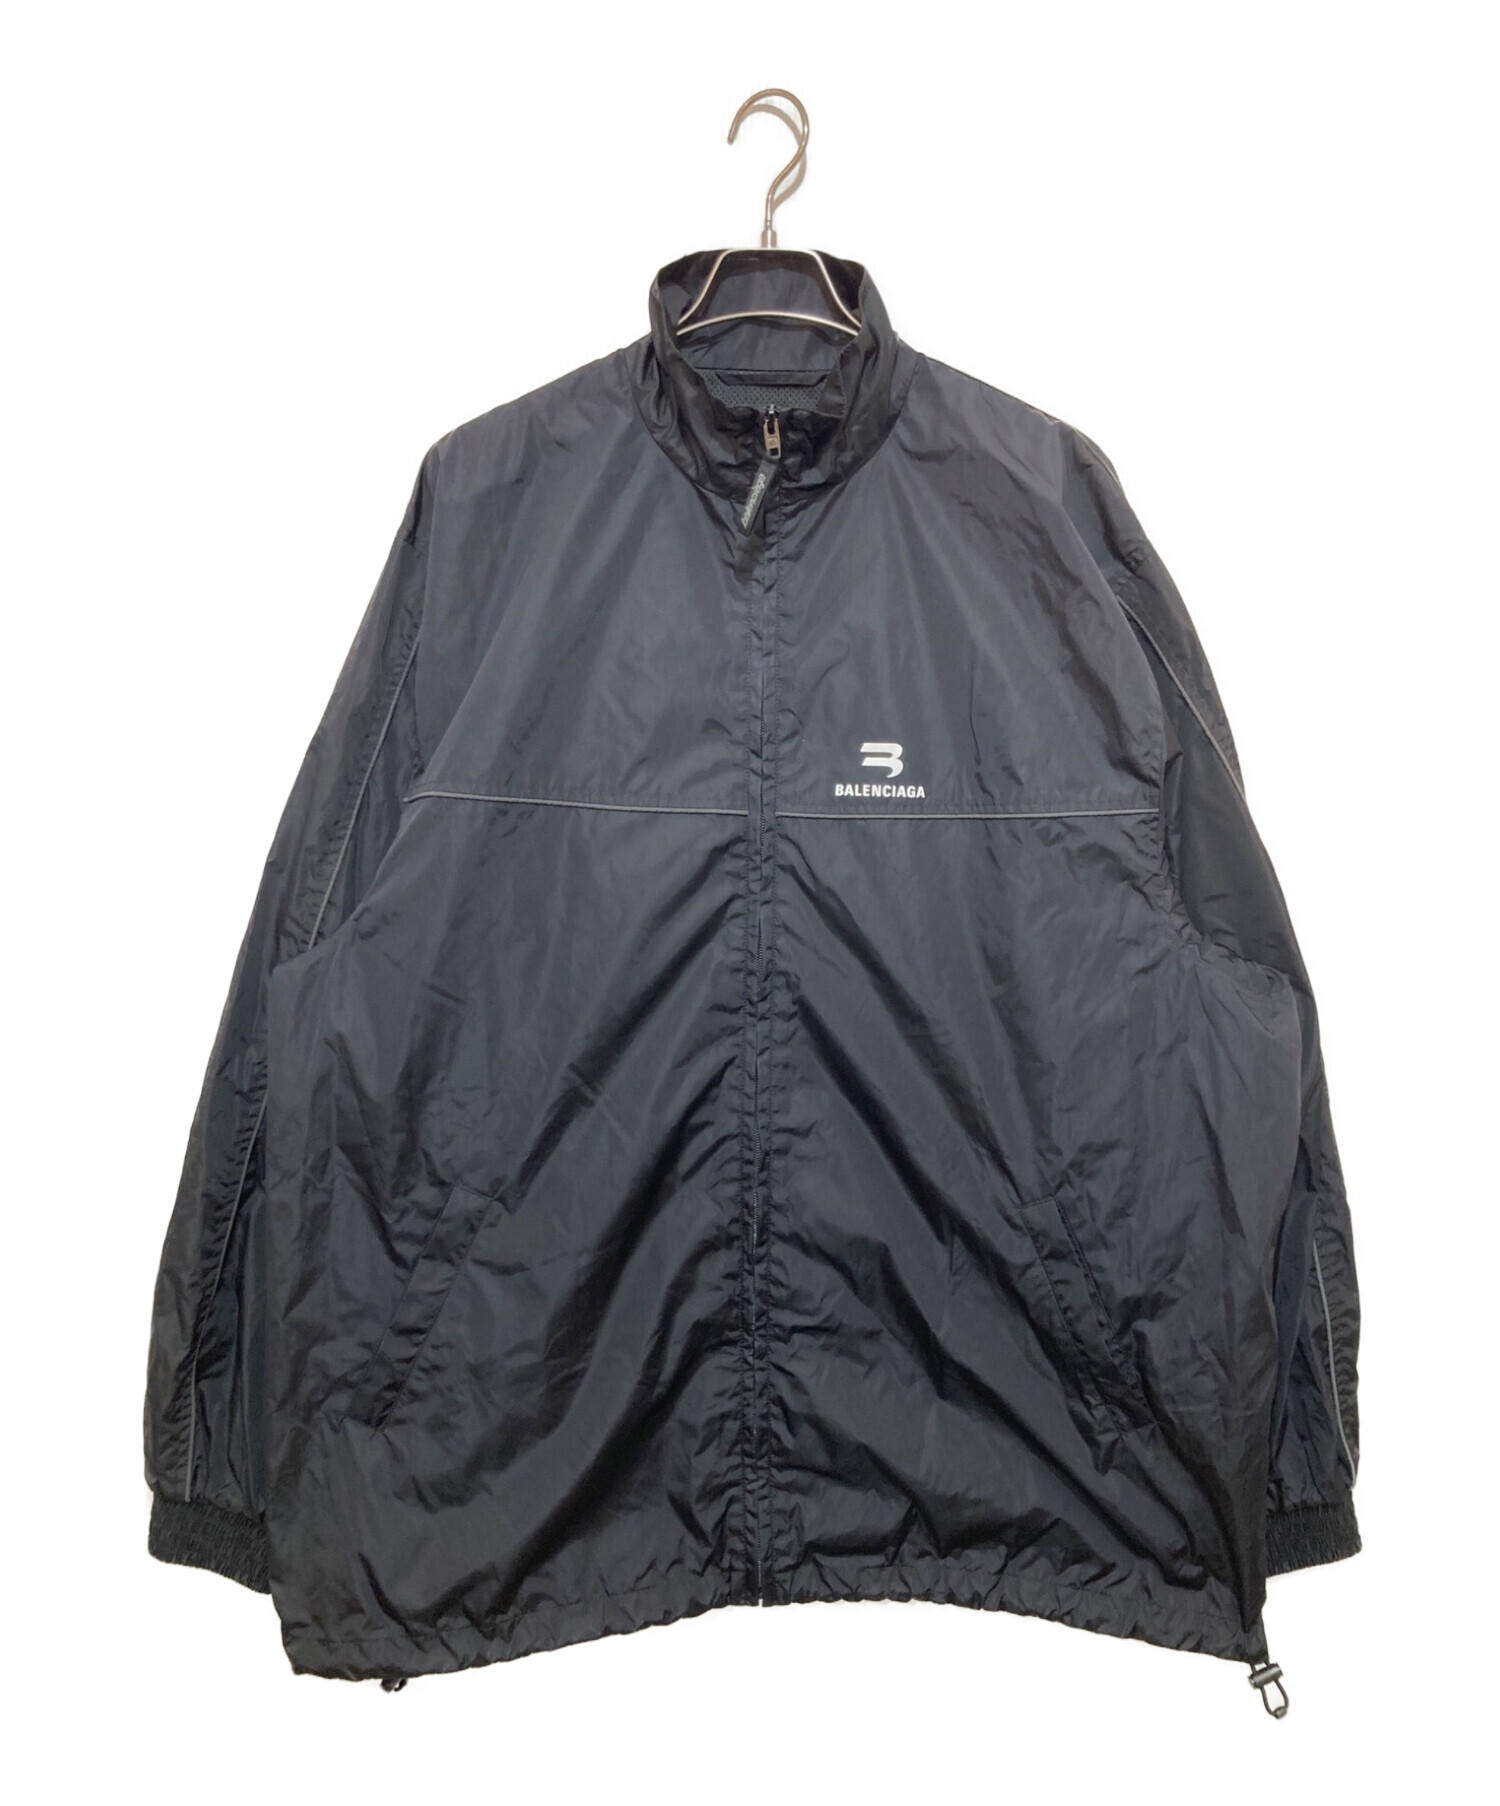 BALENCIAGA (バレンシアガ) ナイロントラックスーツジャケット ブラック サイズ:M